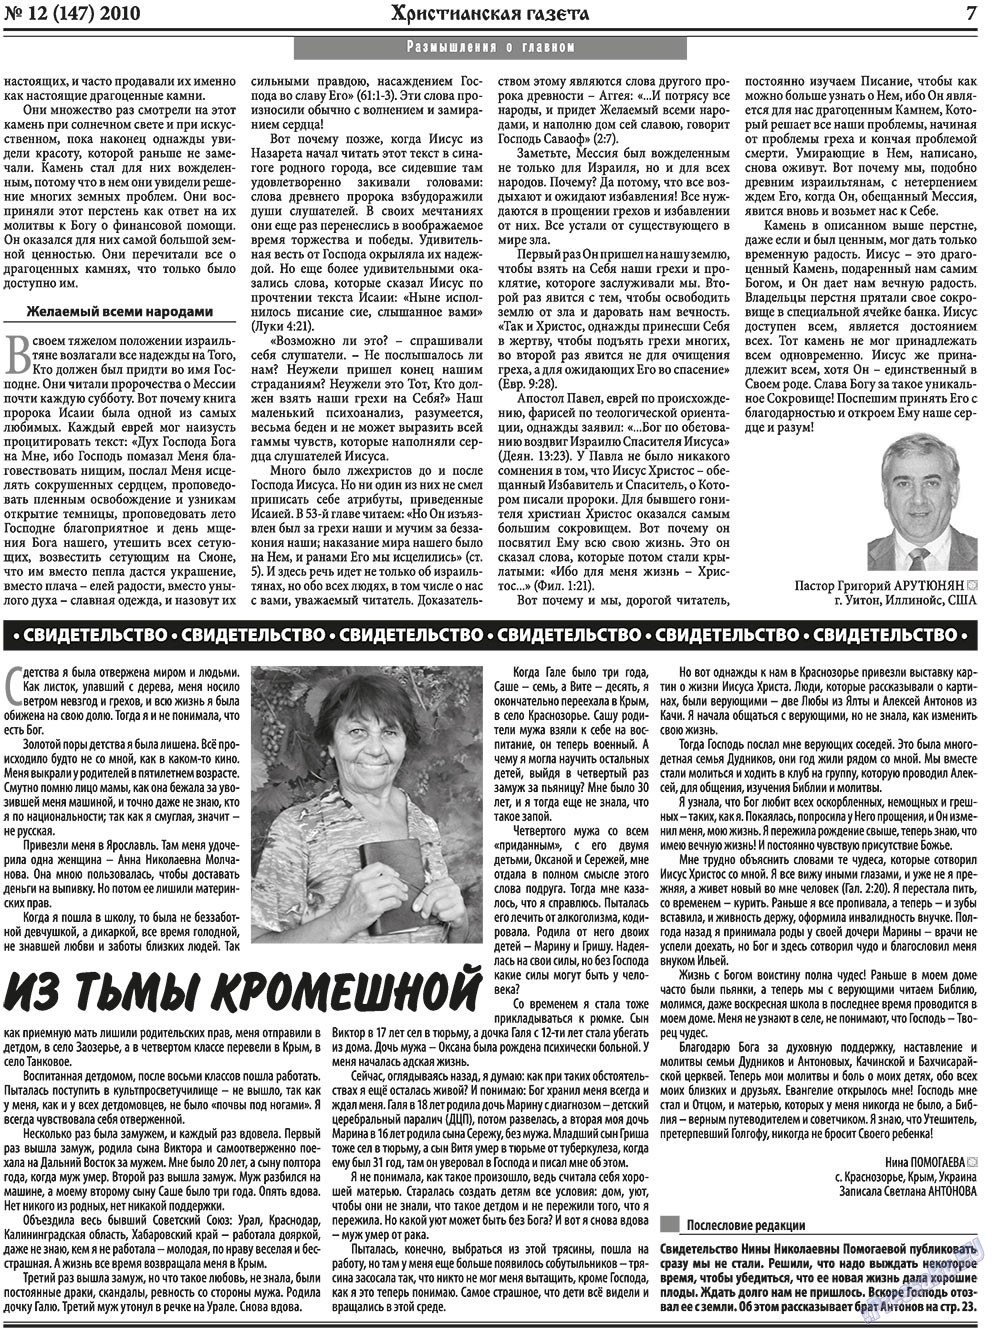 Христианская газета, газета. 2010 №12 стр.7